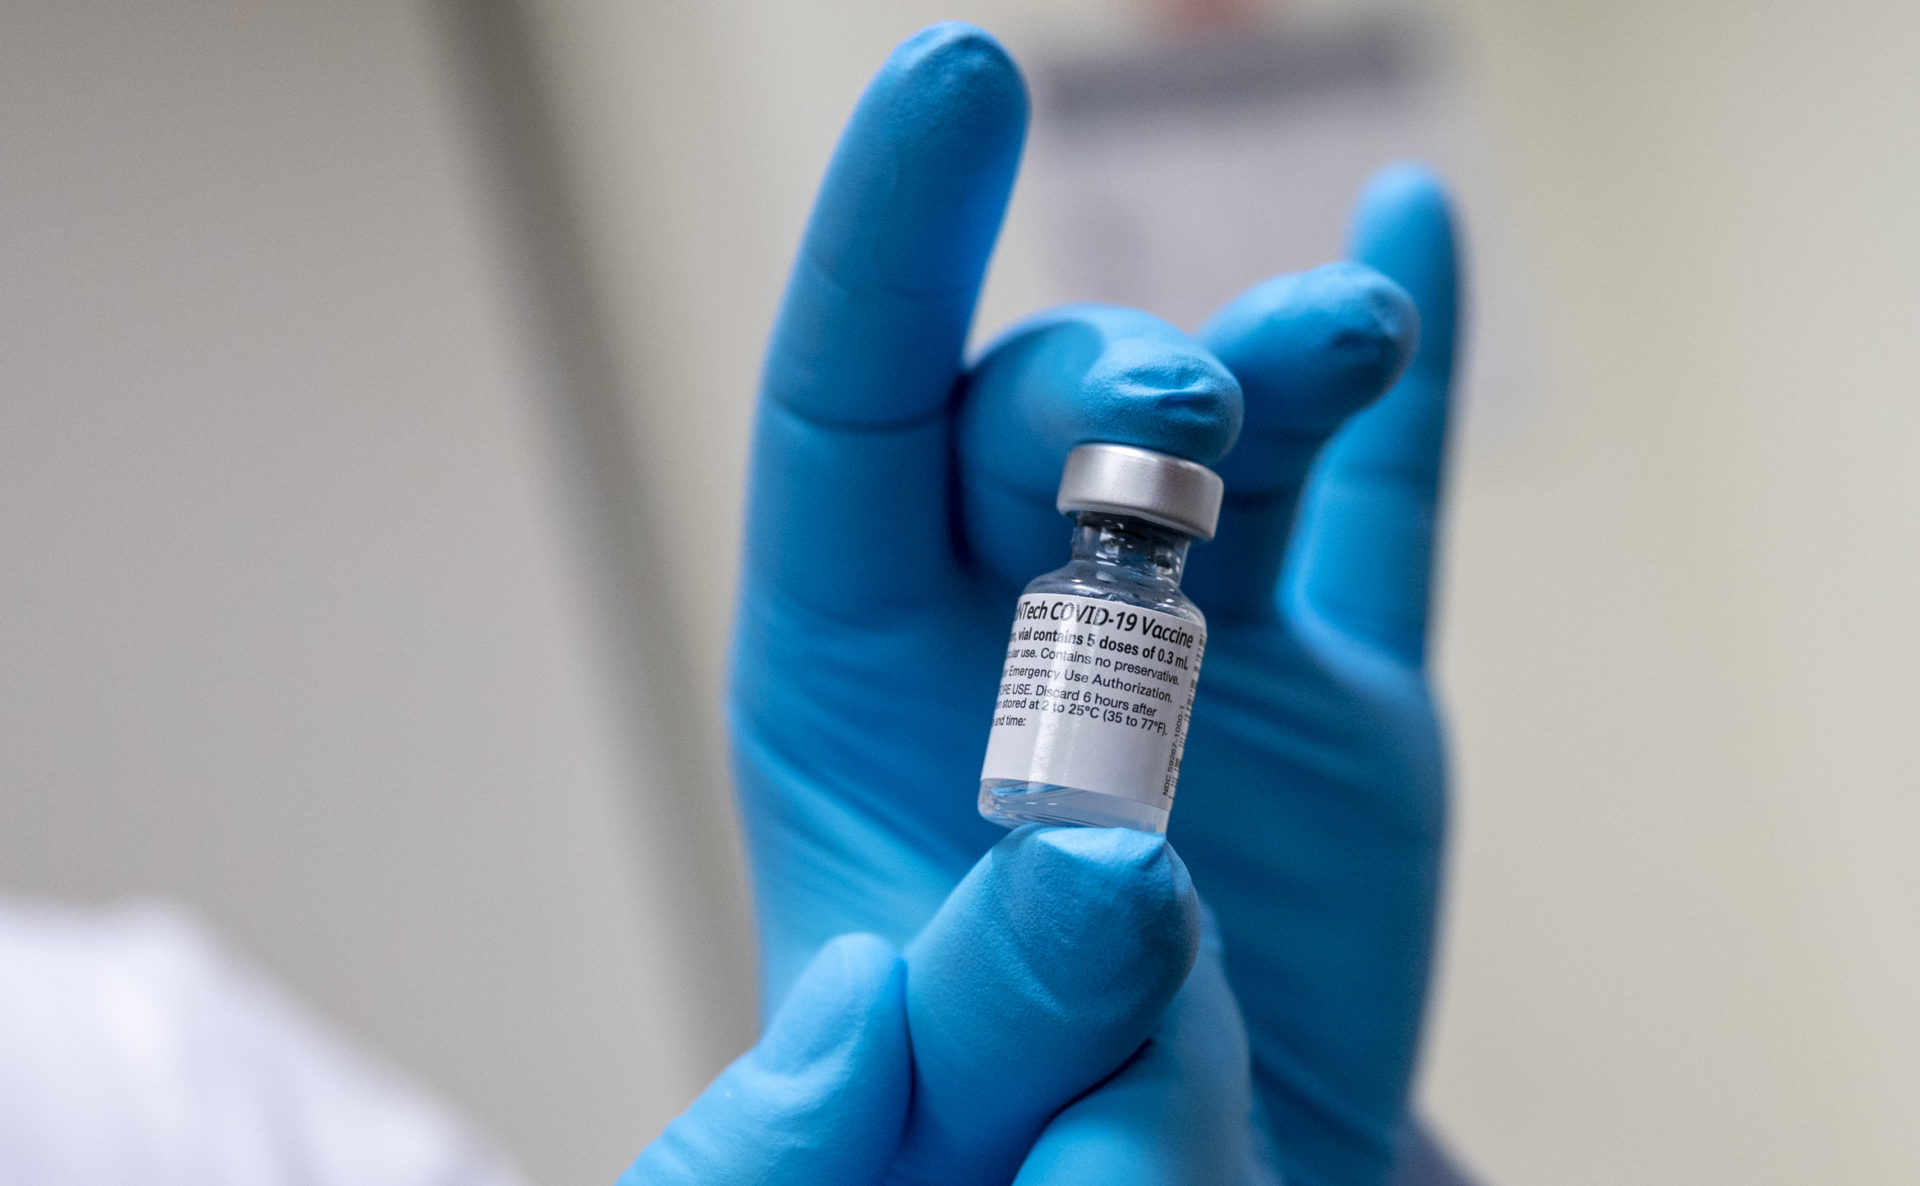 TSMC และ Foxconn เตรียมสั่งซื้อวัคซีนโควิด-19 แทนรัฐบาลไต้หวัน เพื่อไม่เป็นการหักหน้ารัฐบาลจีน